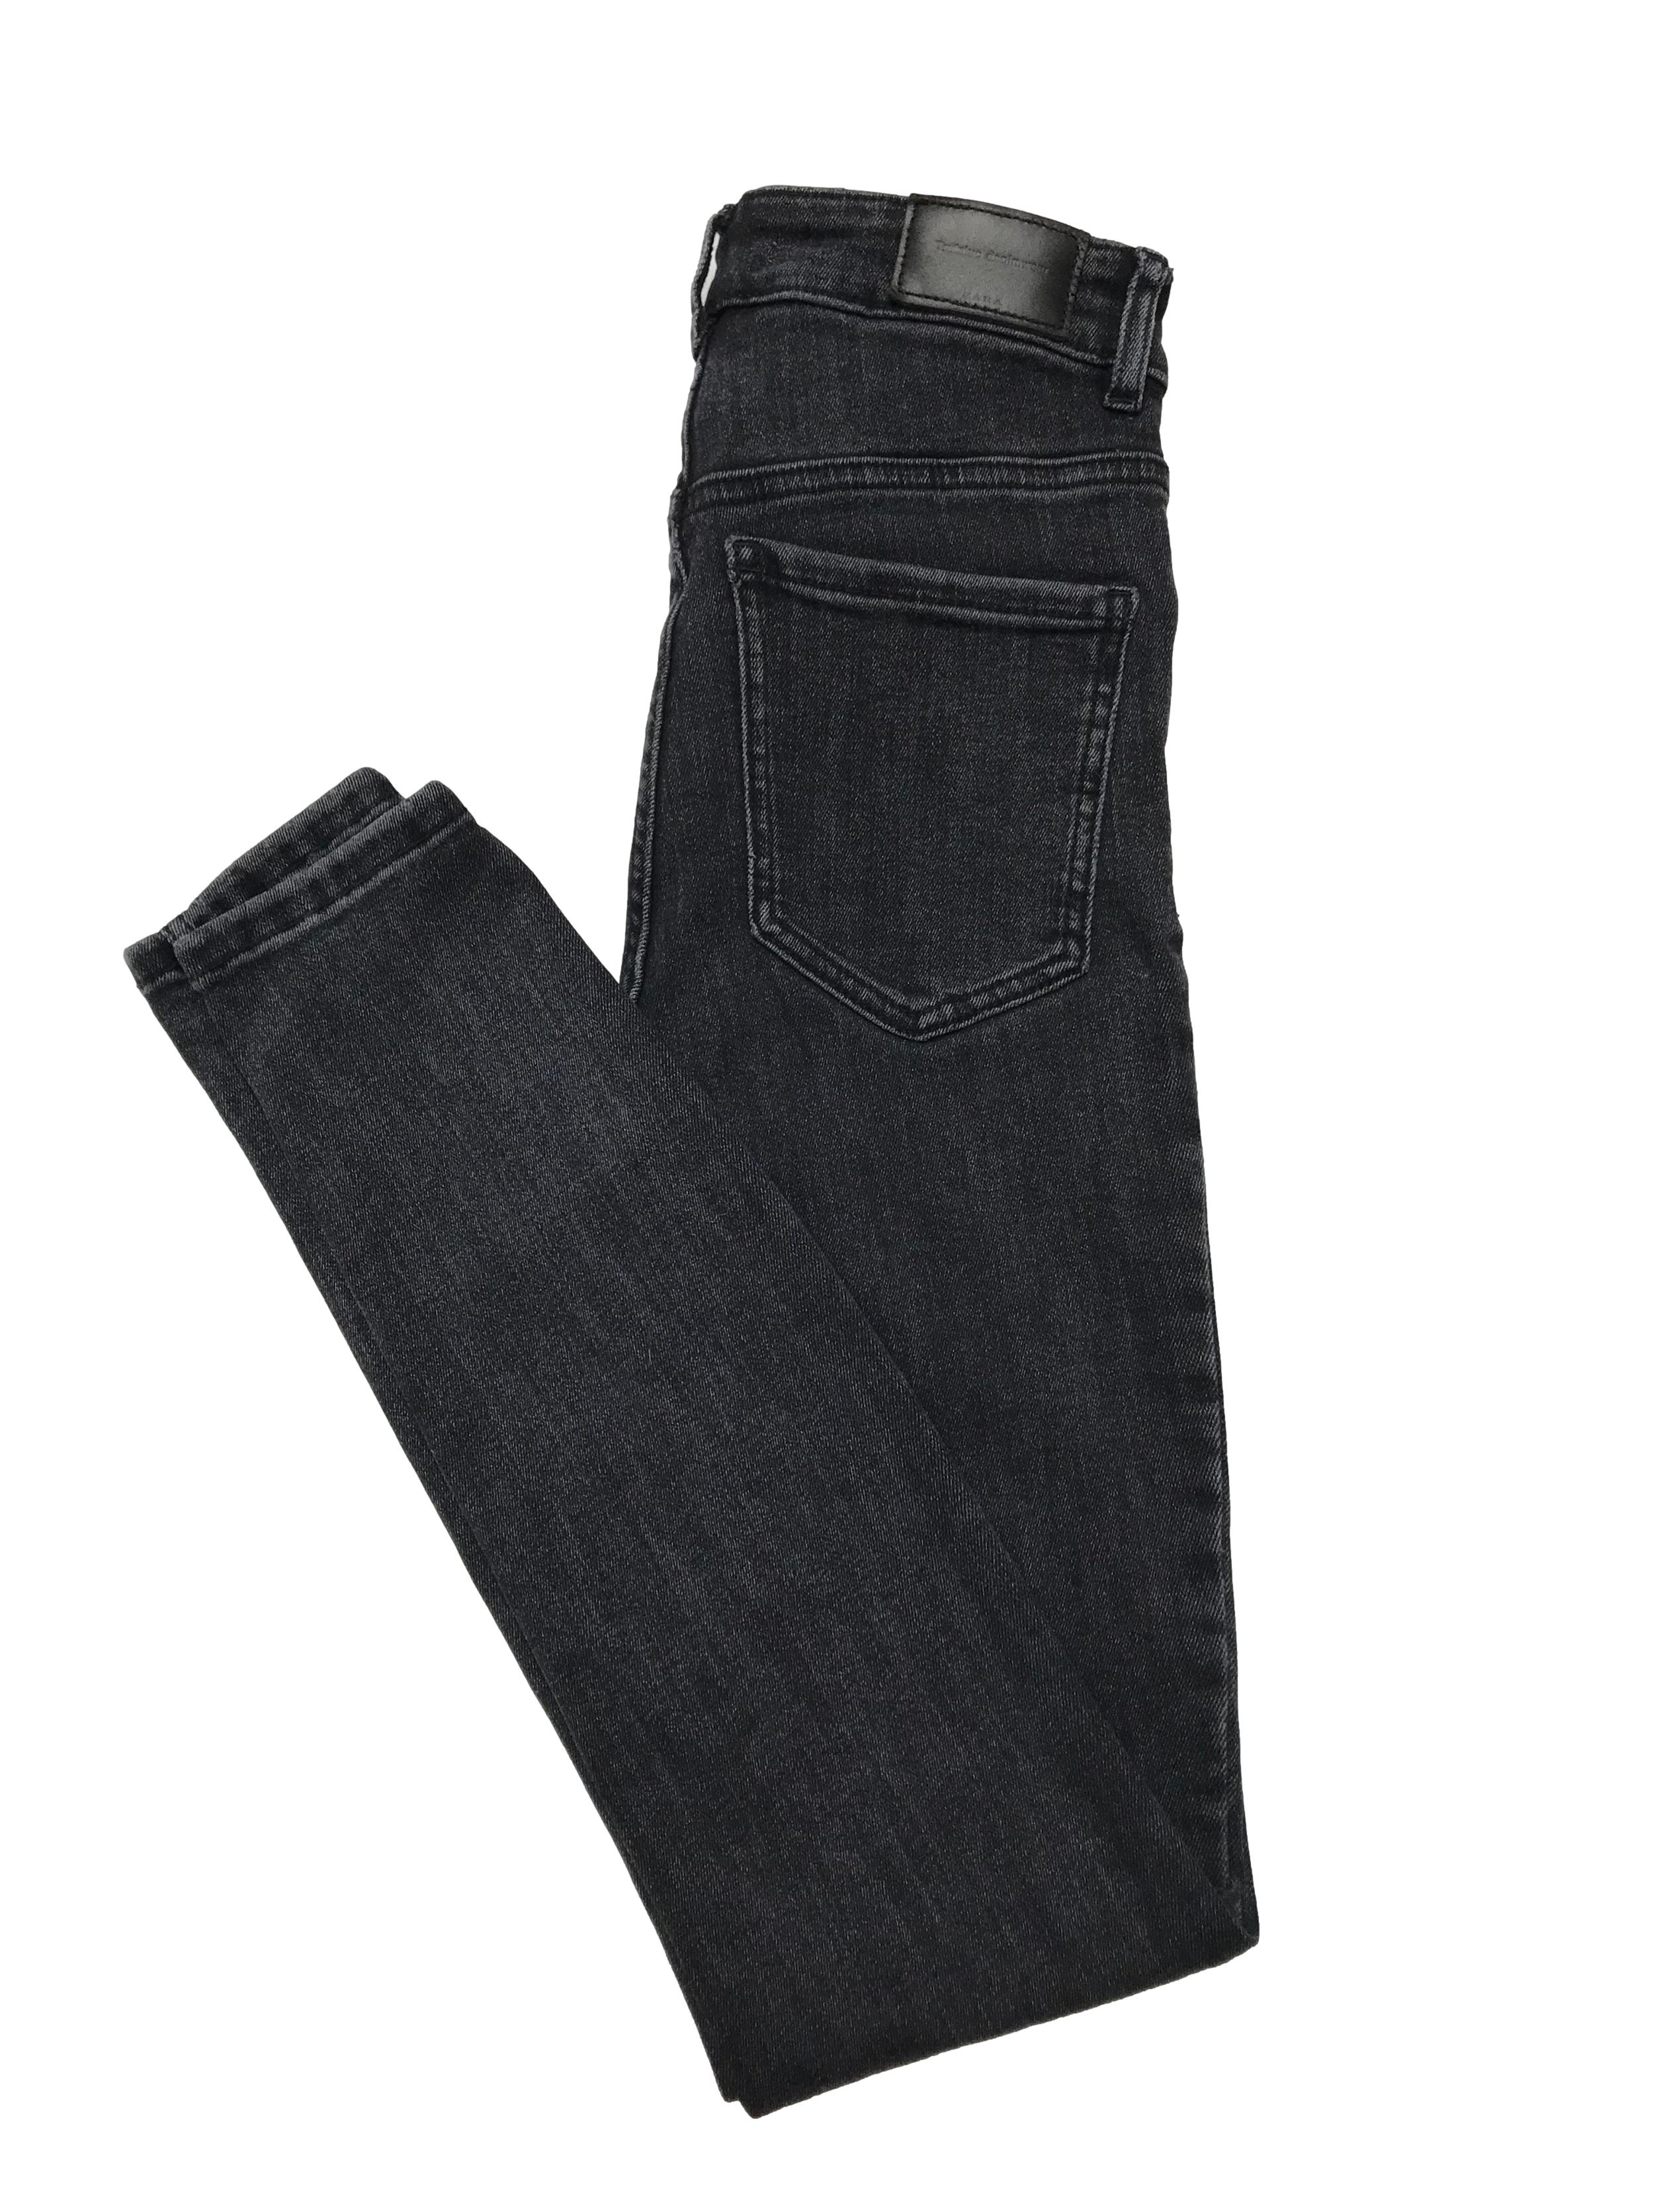 Skinny jean Zara cintura alta, negro efecto lavado. Cintura 60cm sin estirar Largo 98cm